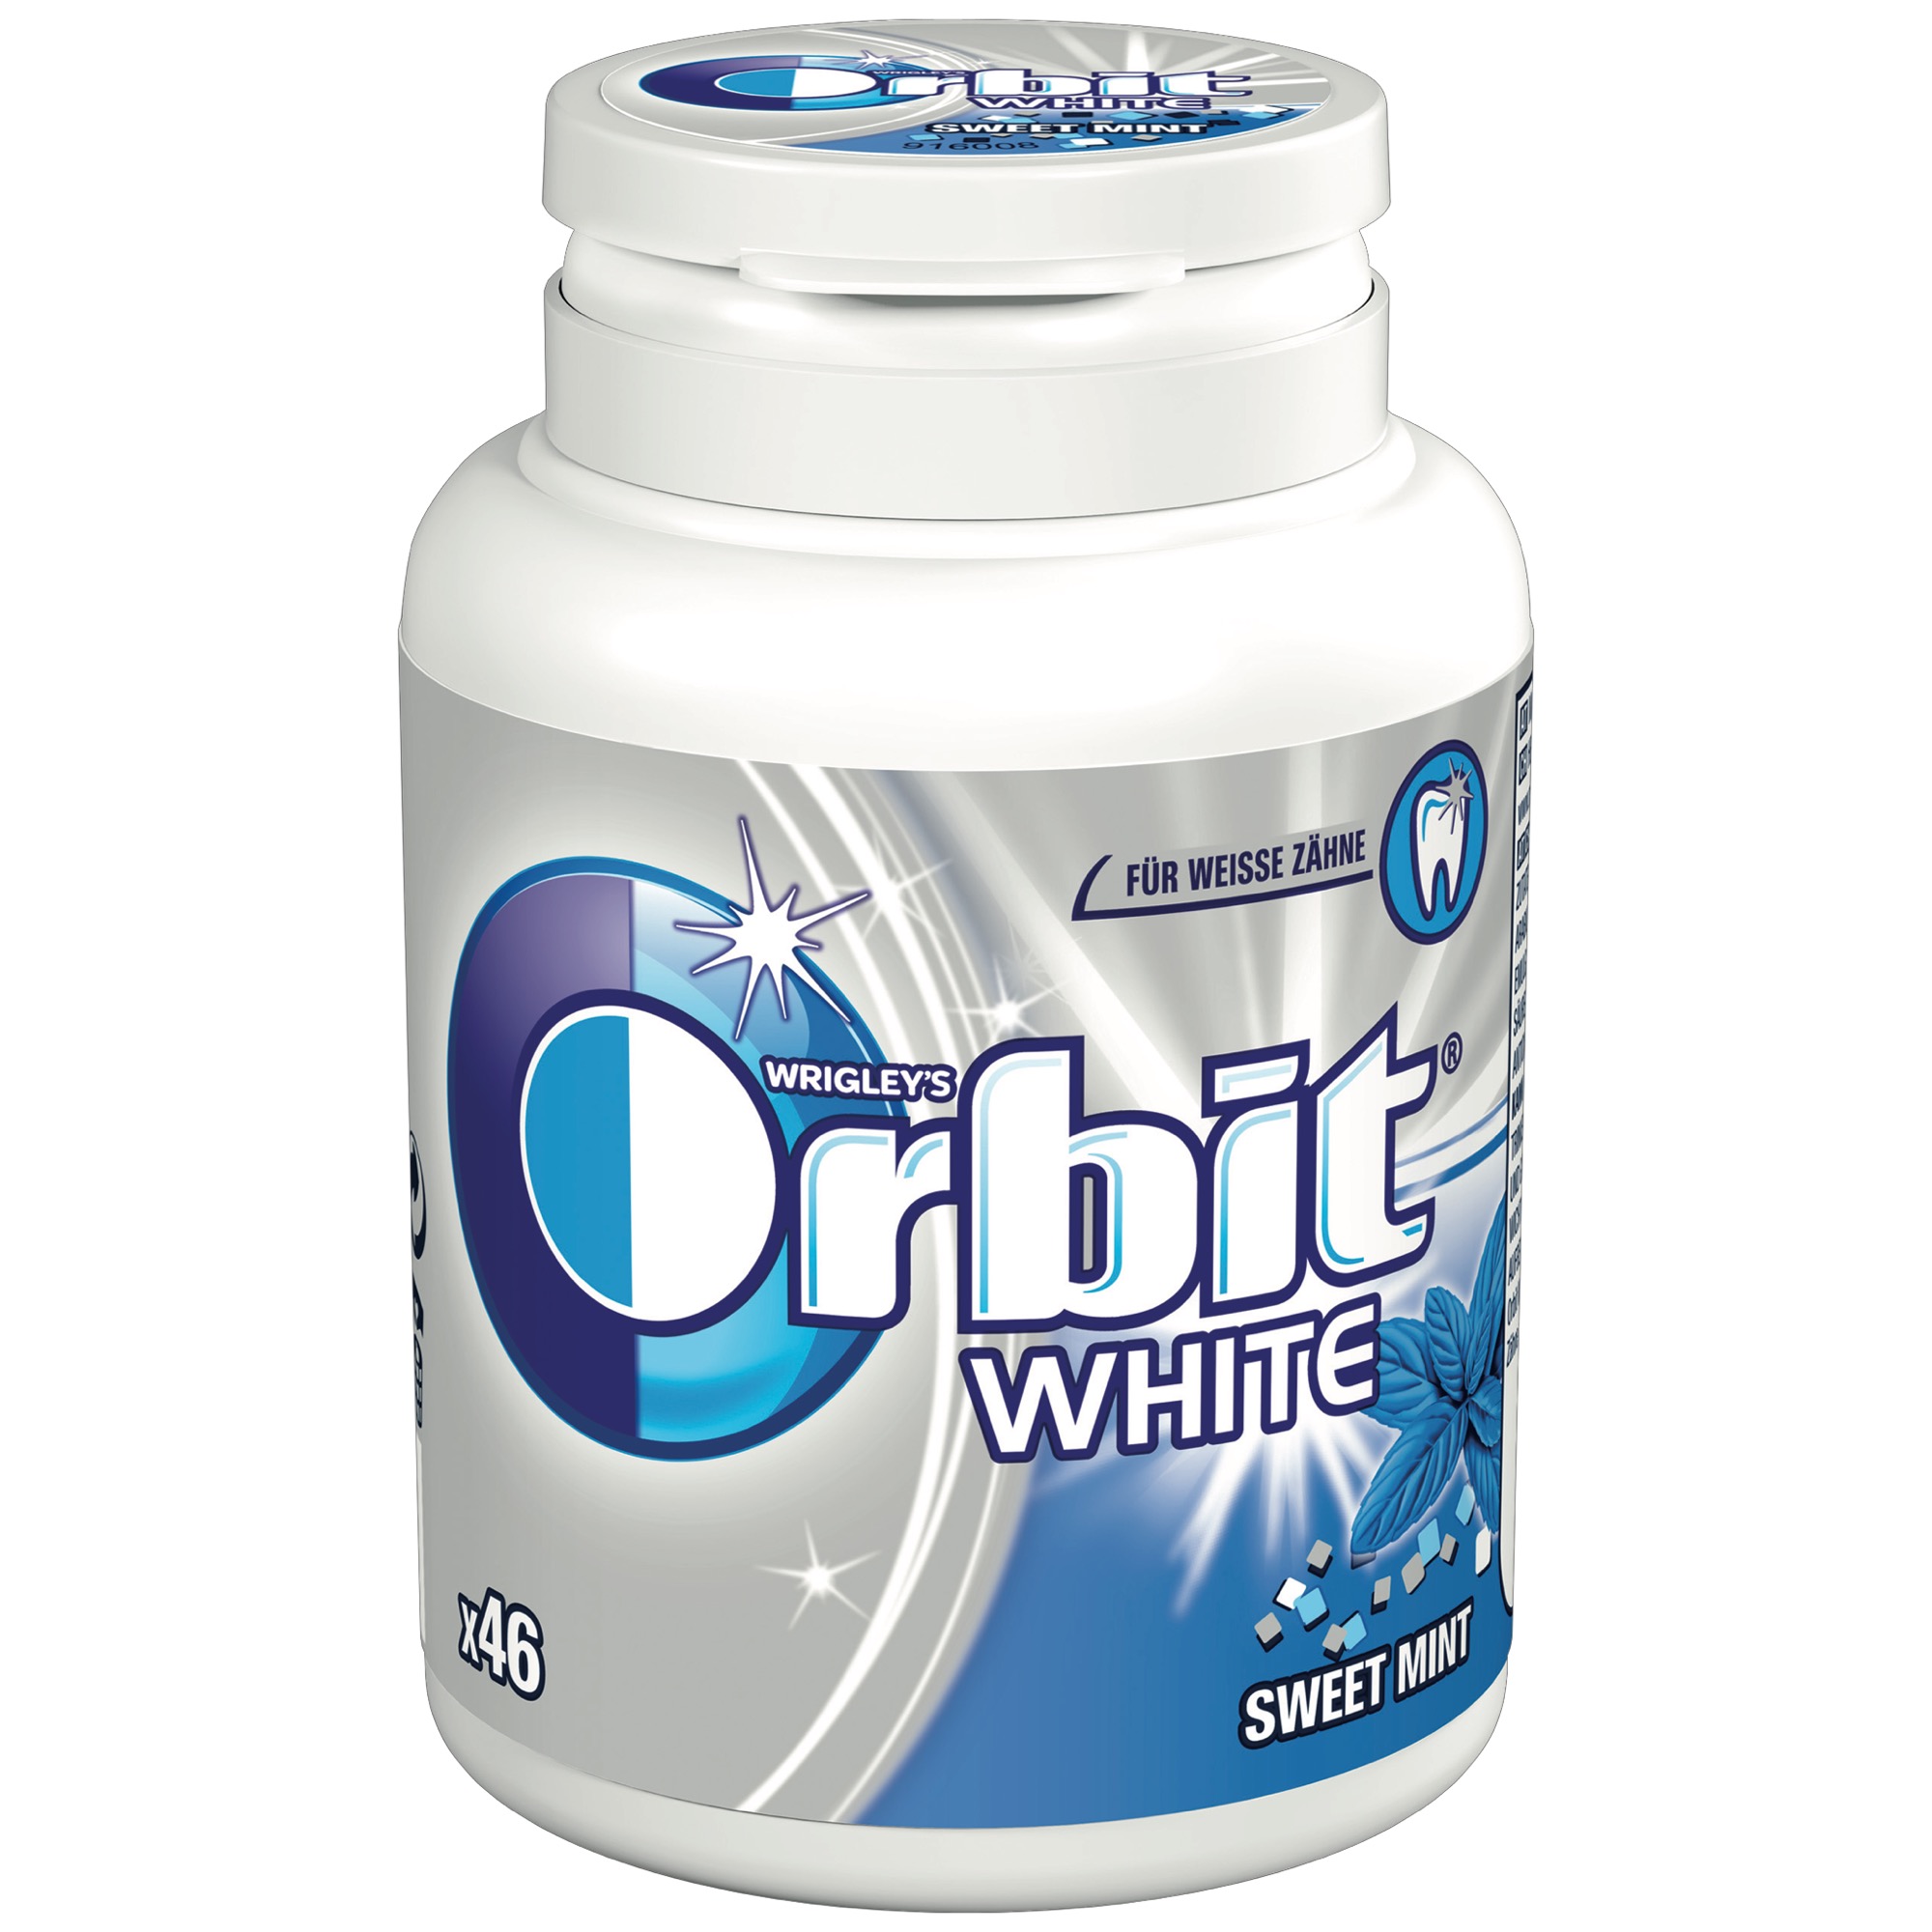 Orbit White Bottle 46 Dragees,Sweet Mint